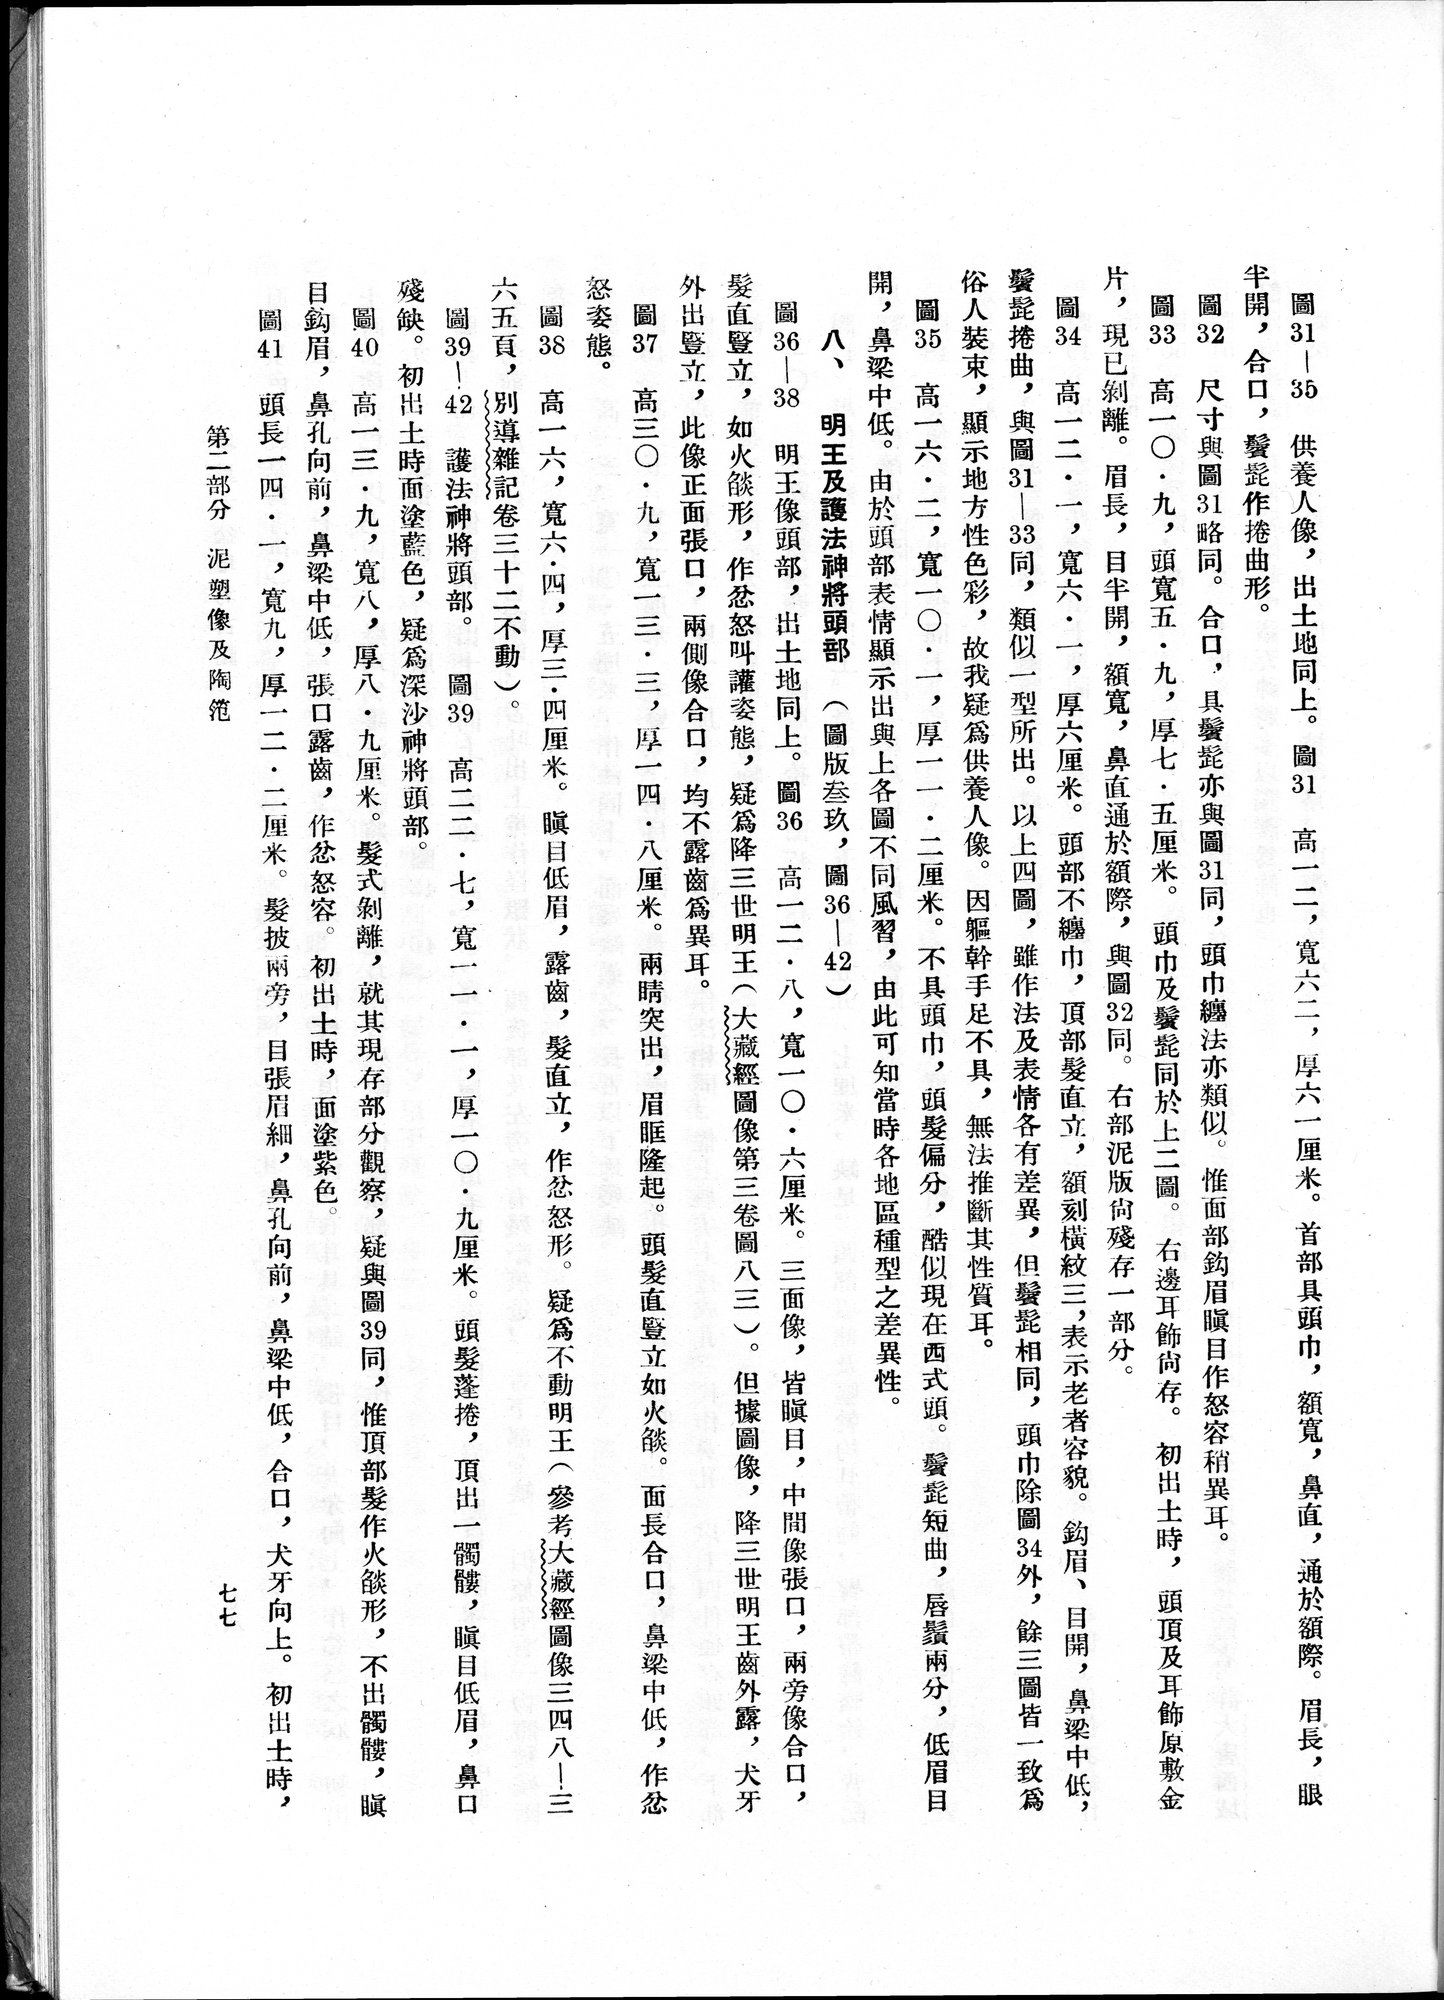 塔里木盆地考古記 : vol.1 / Page 141 (Grayscale High Resolution Image)